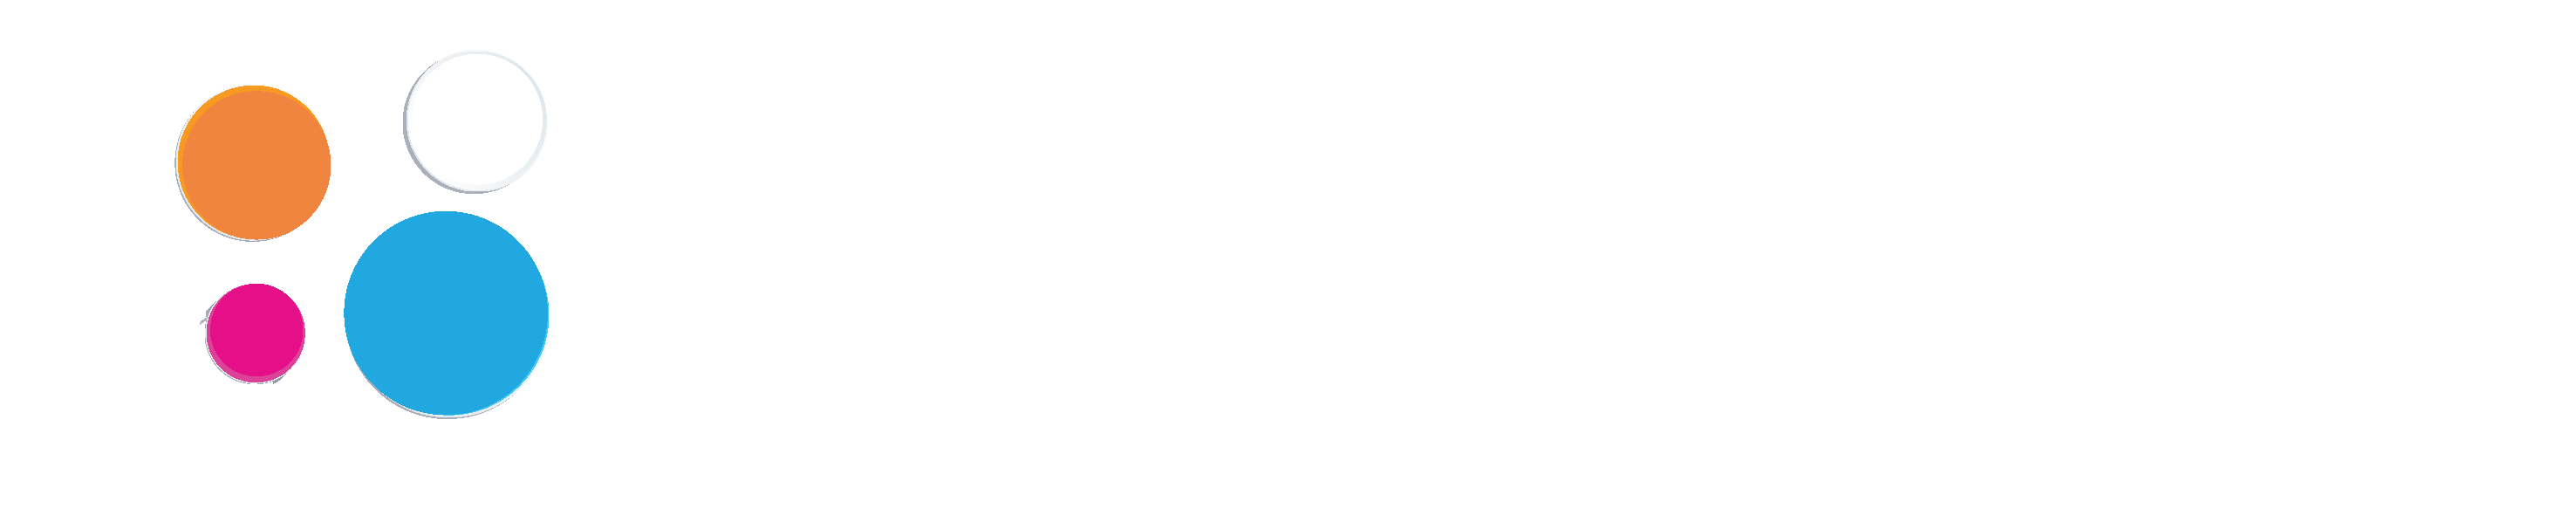 Ehany Marketing Agency